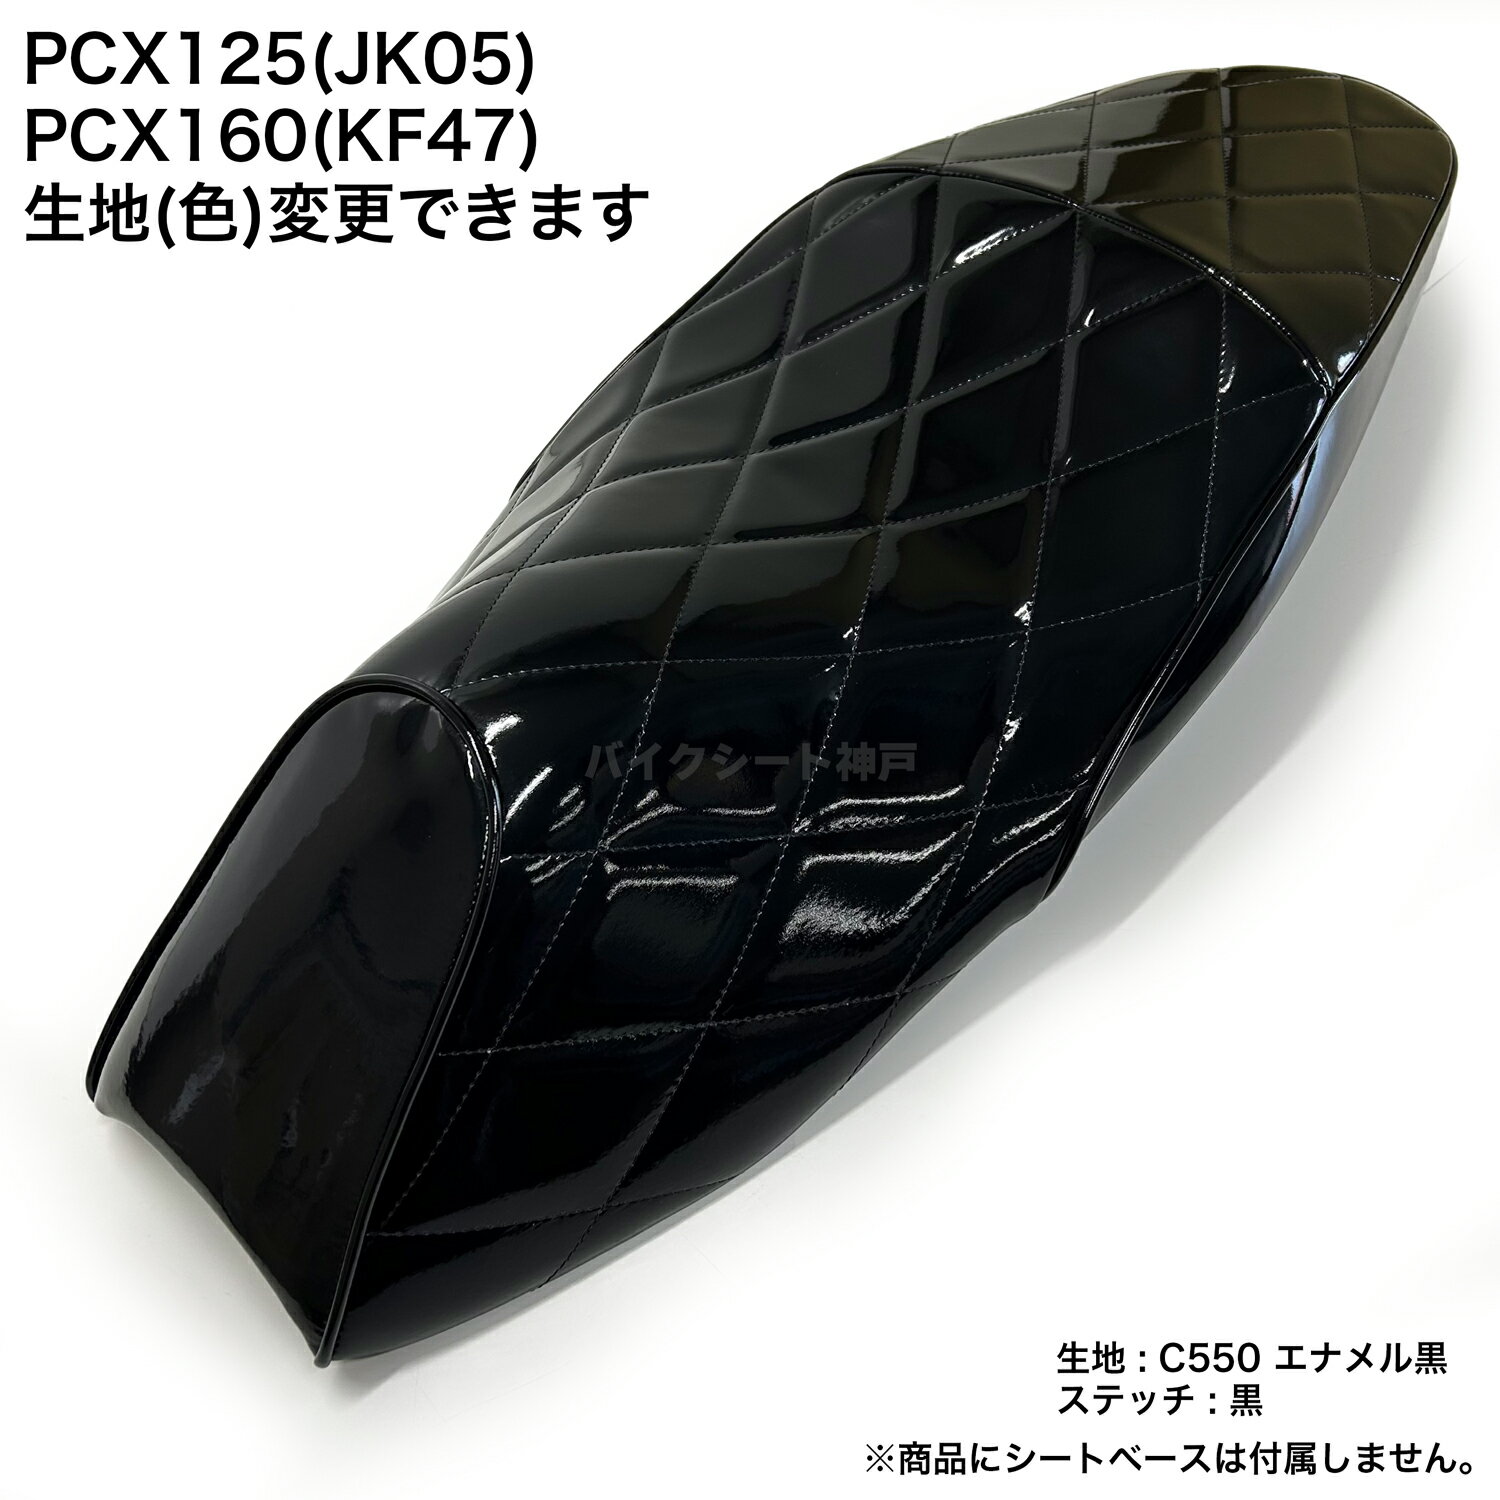 【全て日本製】【項目選択肢あり色変更可能】PCX 125 (JK05) PCX160 (KF47)シート カバー エナメル黒 ダイヤカット ミシンぬい HCH5714